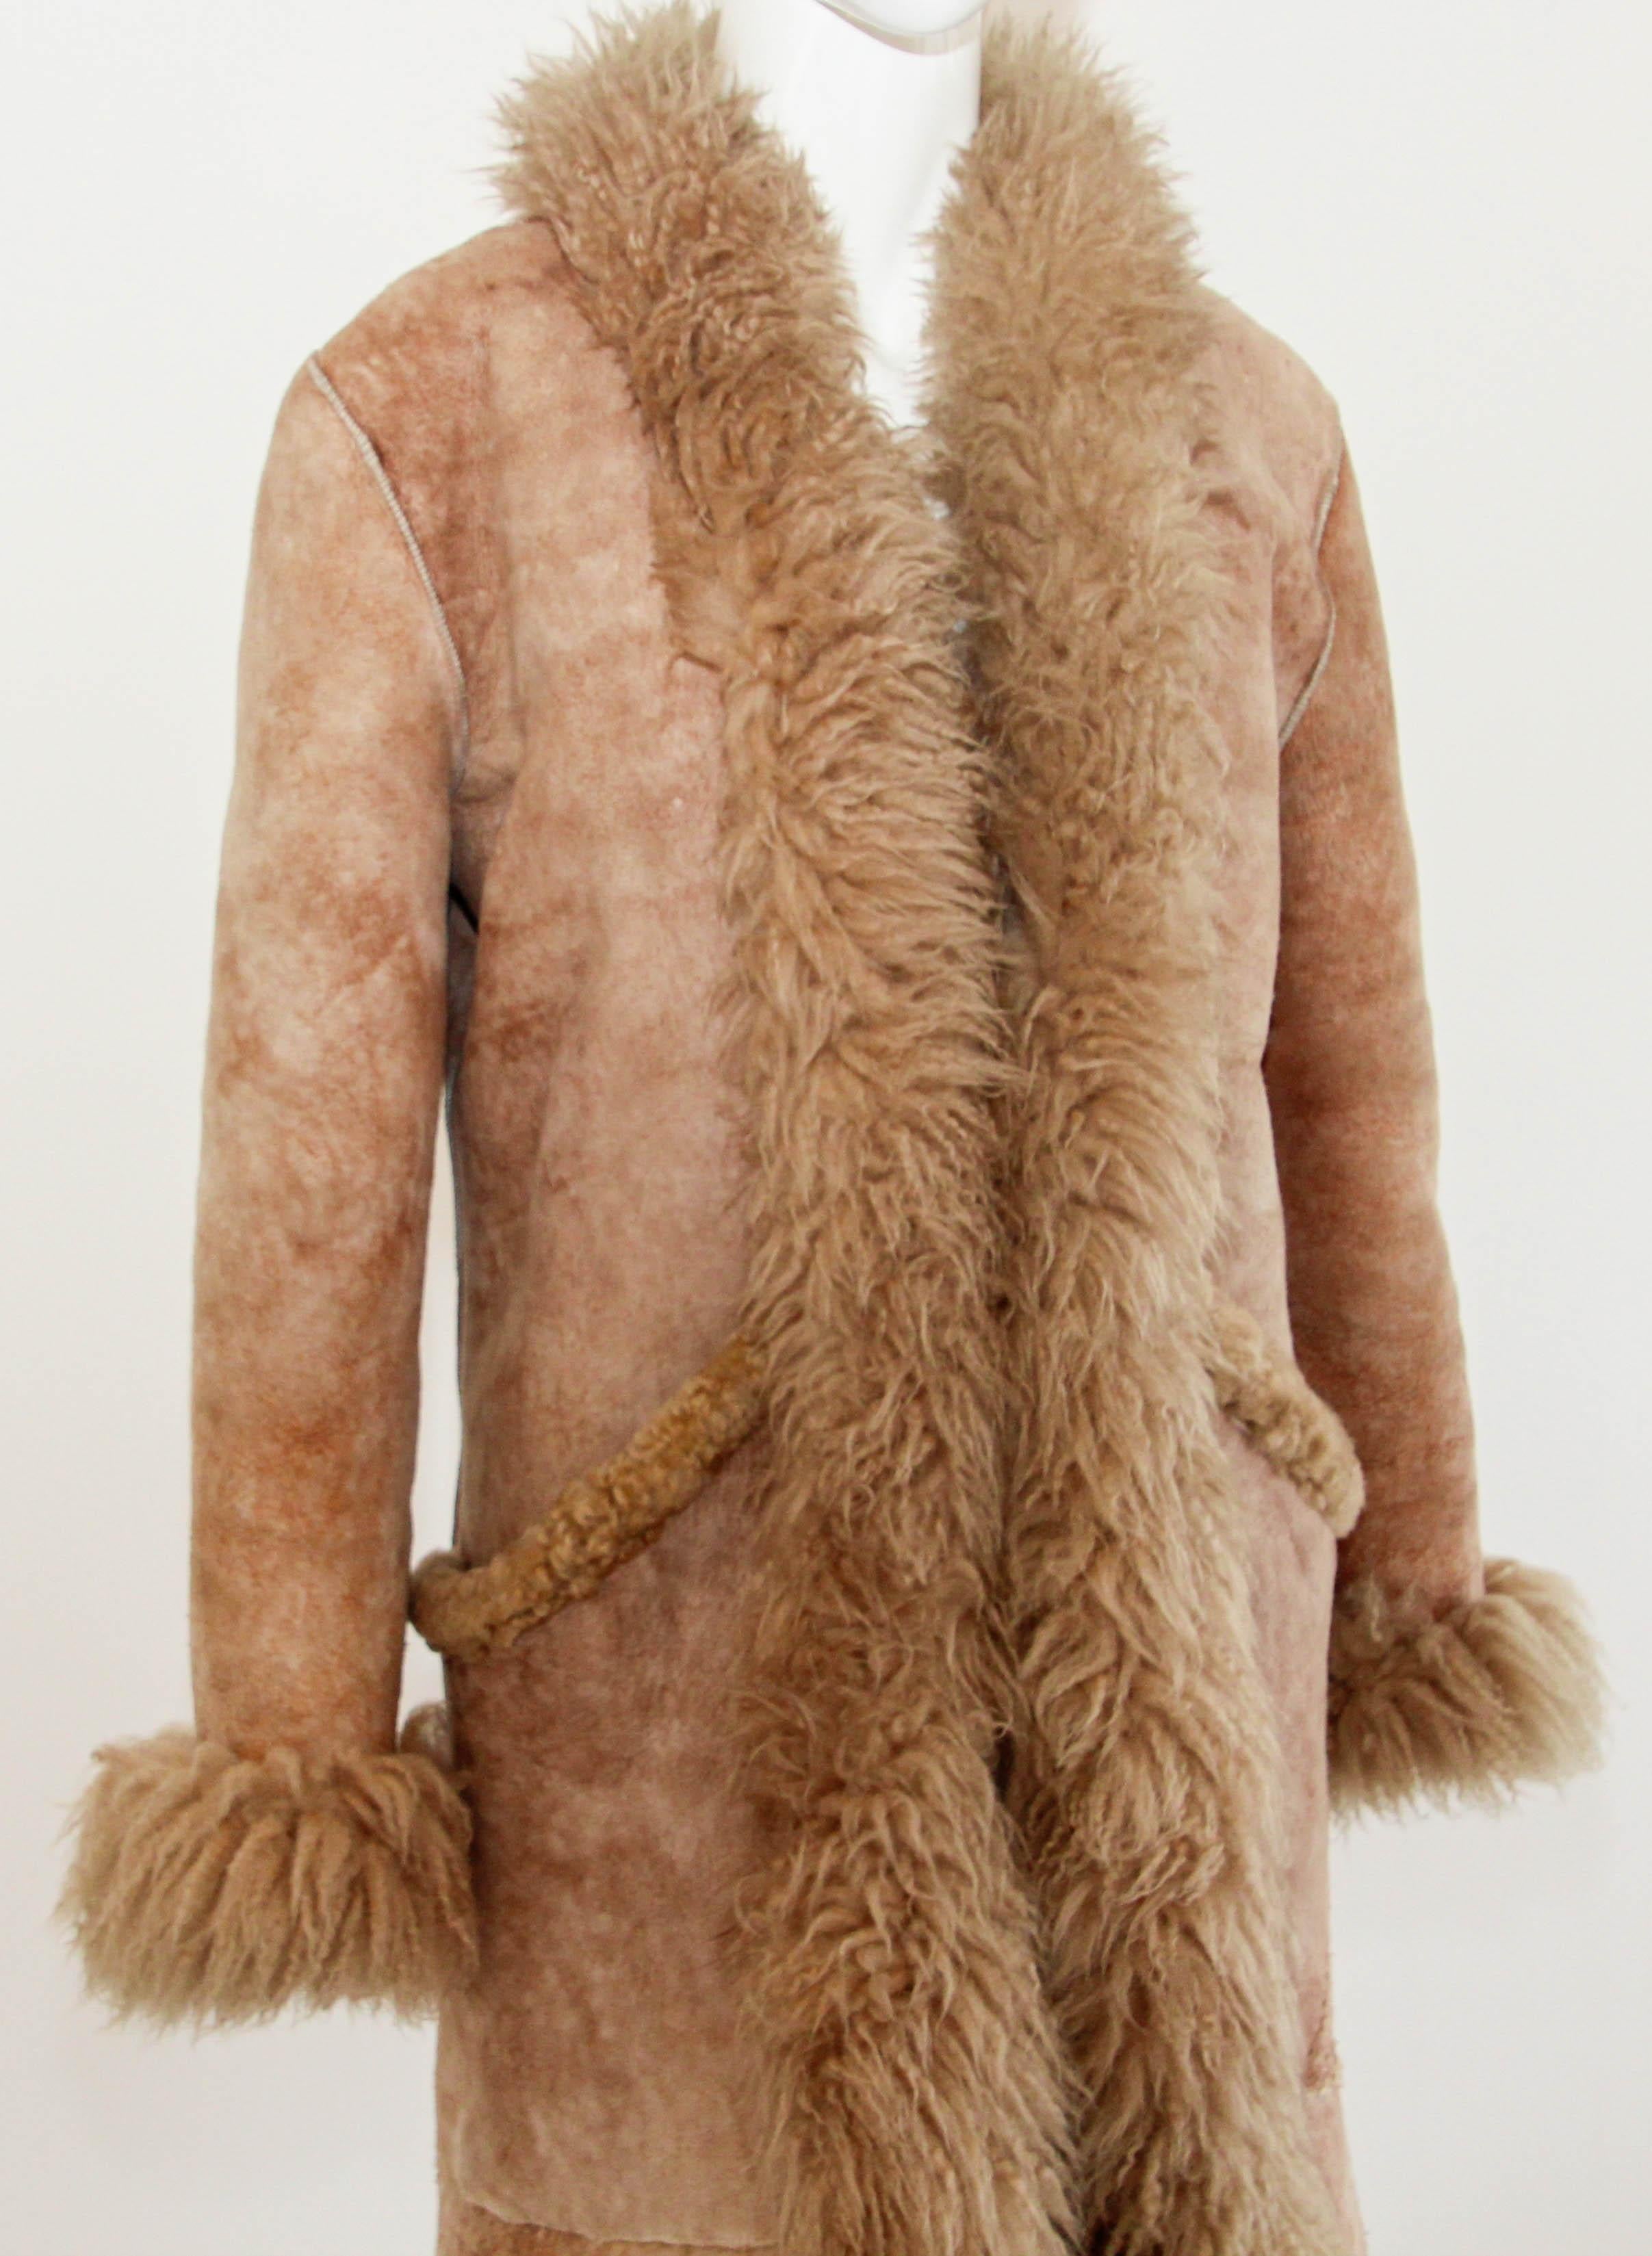 Vintage brauner Schafspelzmantel Australien 1960er, 70er Jahre.
Vintage Maxi langer Mantel aus Bio-Schafsleder 100% echtes Bio-Schafsleder, hergestellt in Australien von AUSFURS.
Unglaublich schöner Mantel aus echtem Veloursleder, besetzt mit